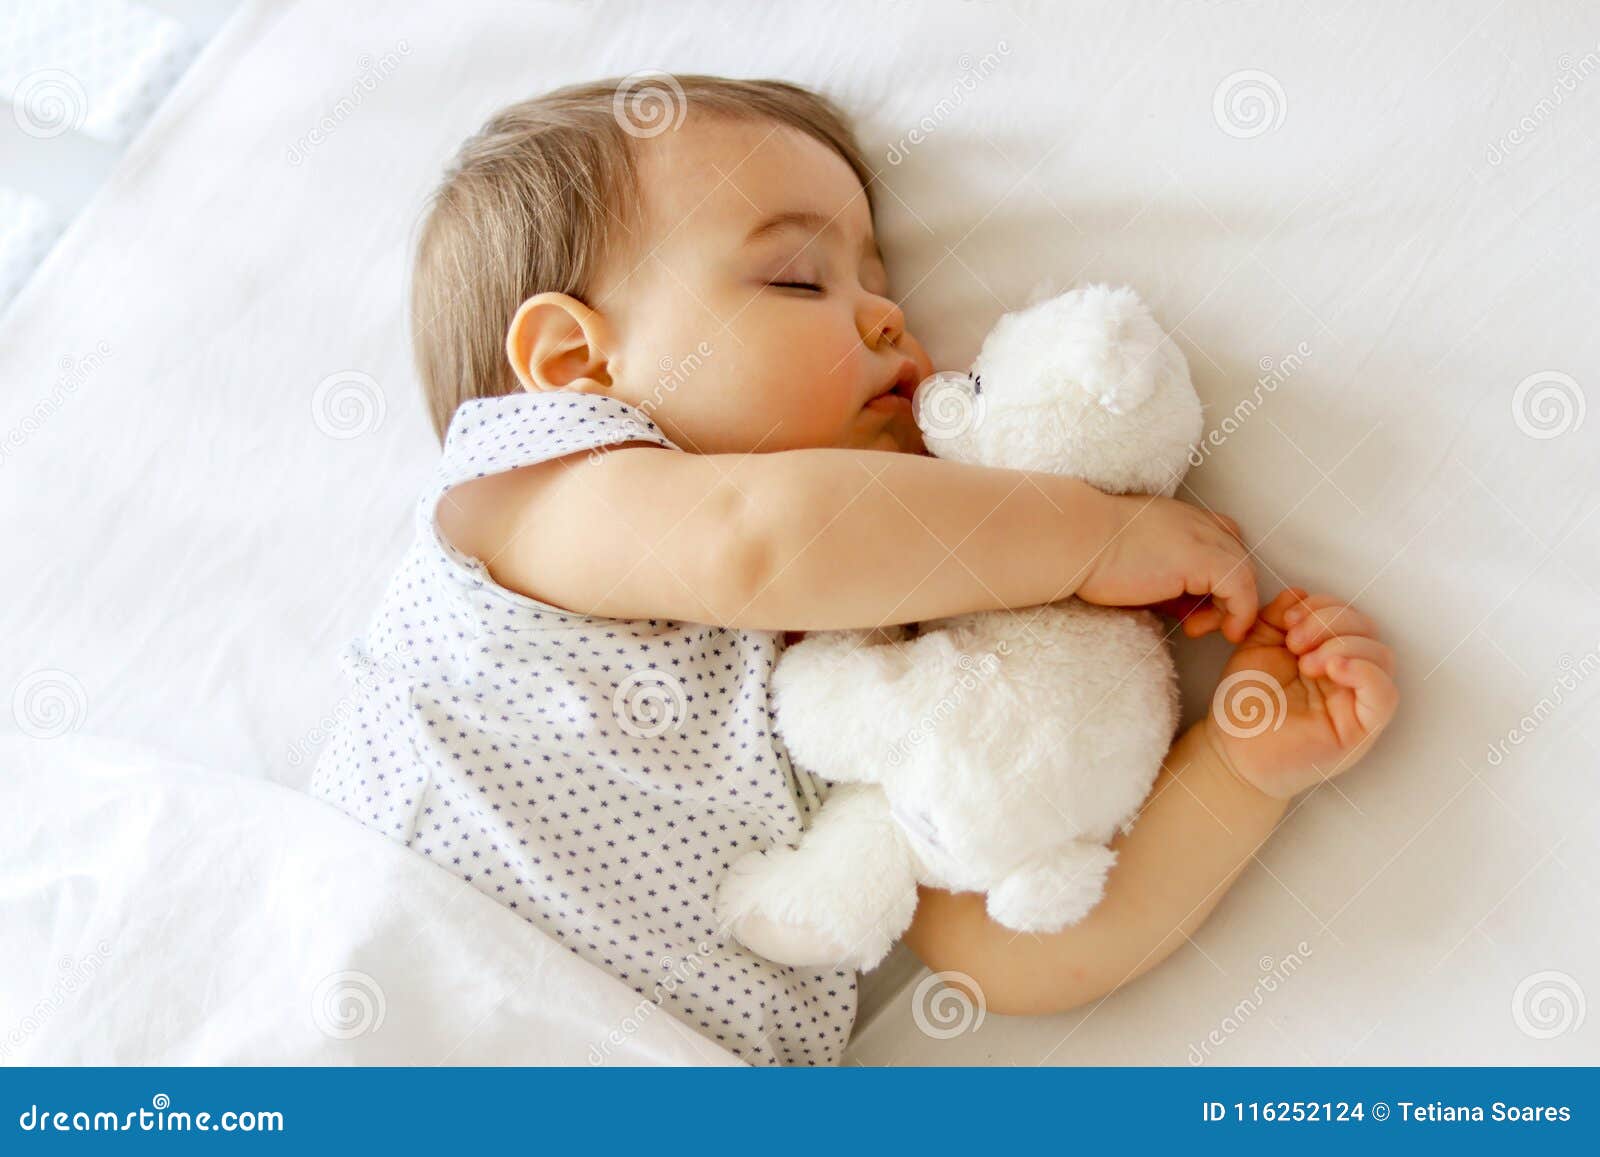 Cute Bebé Recién Nacido Duerme Con Un Juguete Del Oso De Peluche Blanco  Fotos, retratos, imágenes y fotografía de archivo libres de derecho. Image  51236154